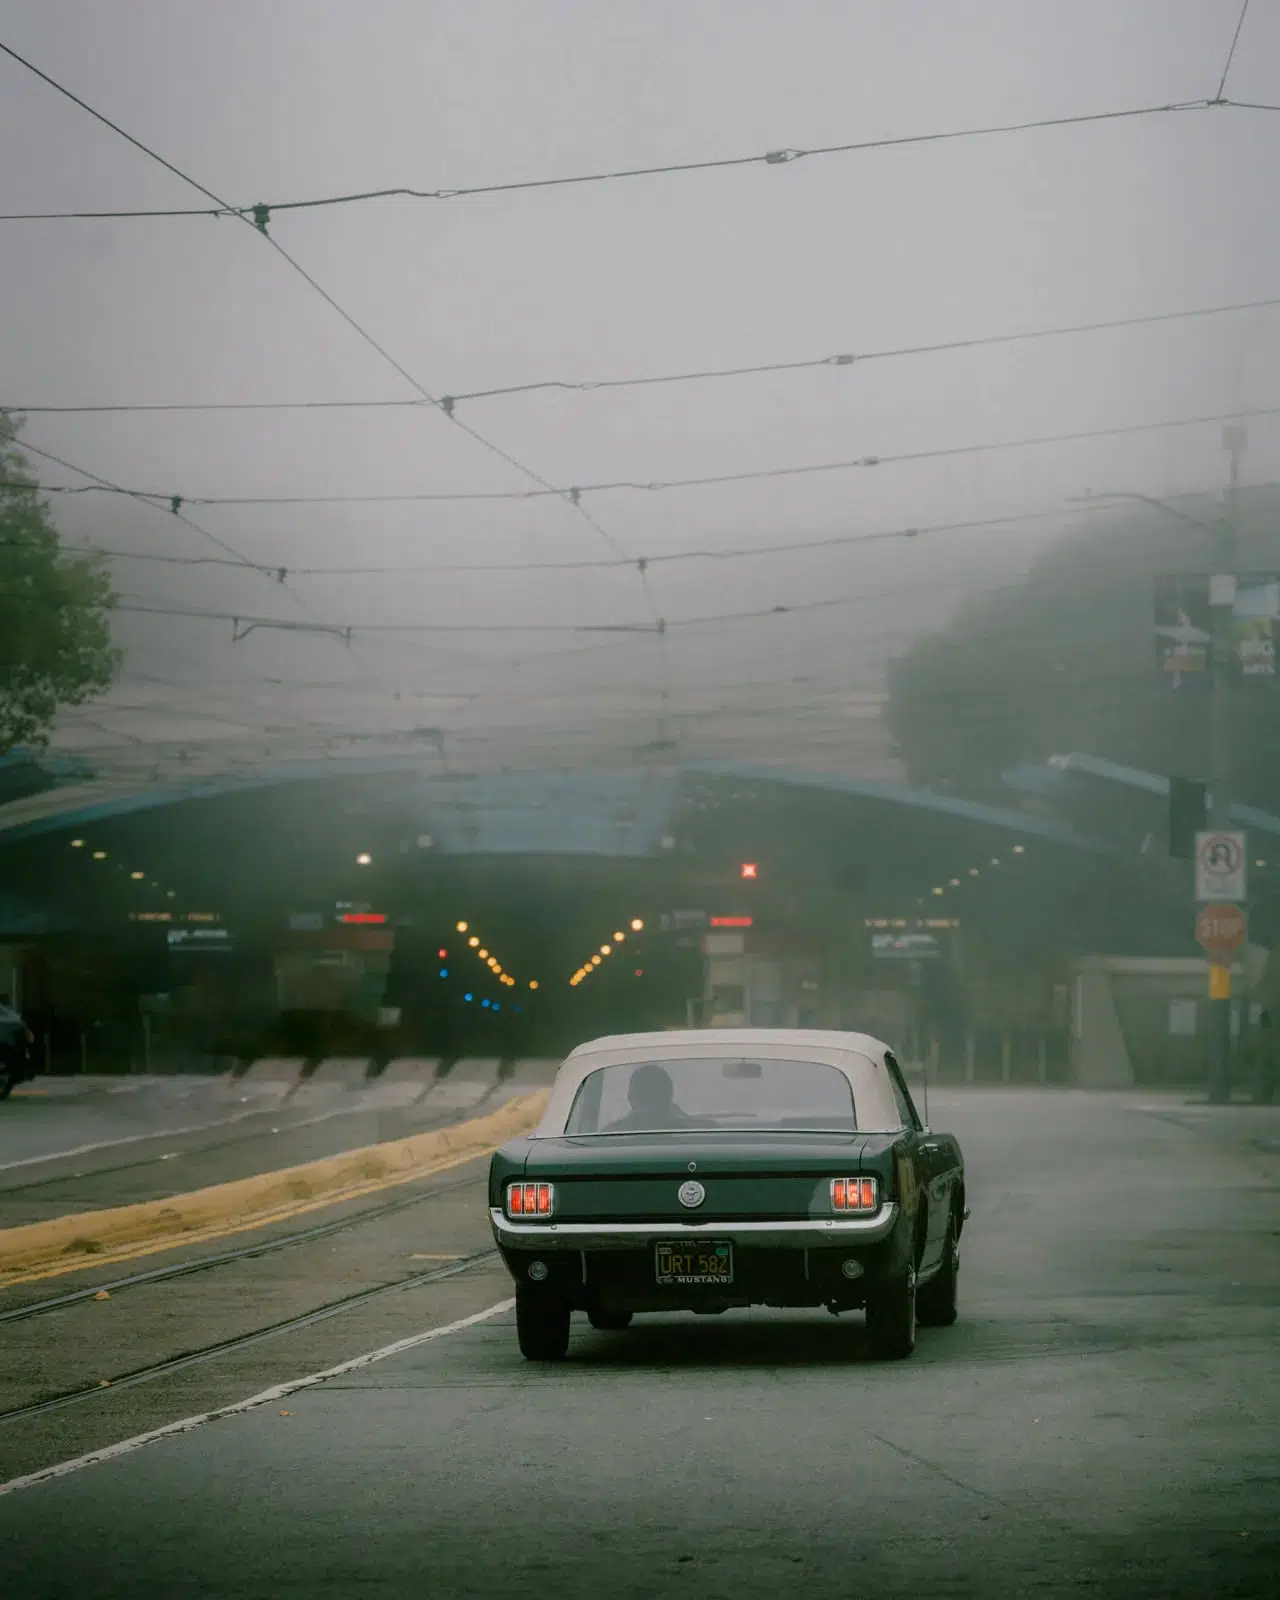 Joshua Singh fotografia callejera de san francisco niebla coche retro